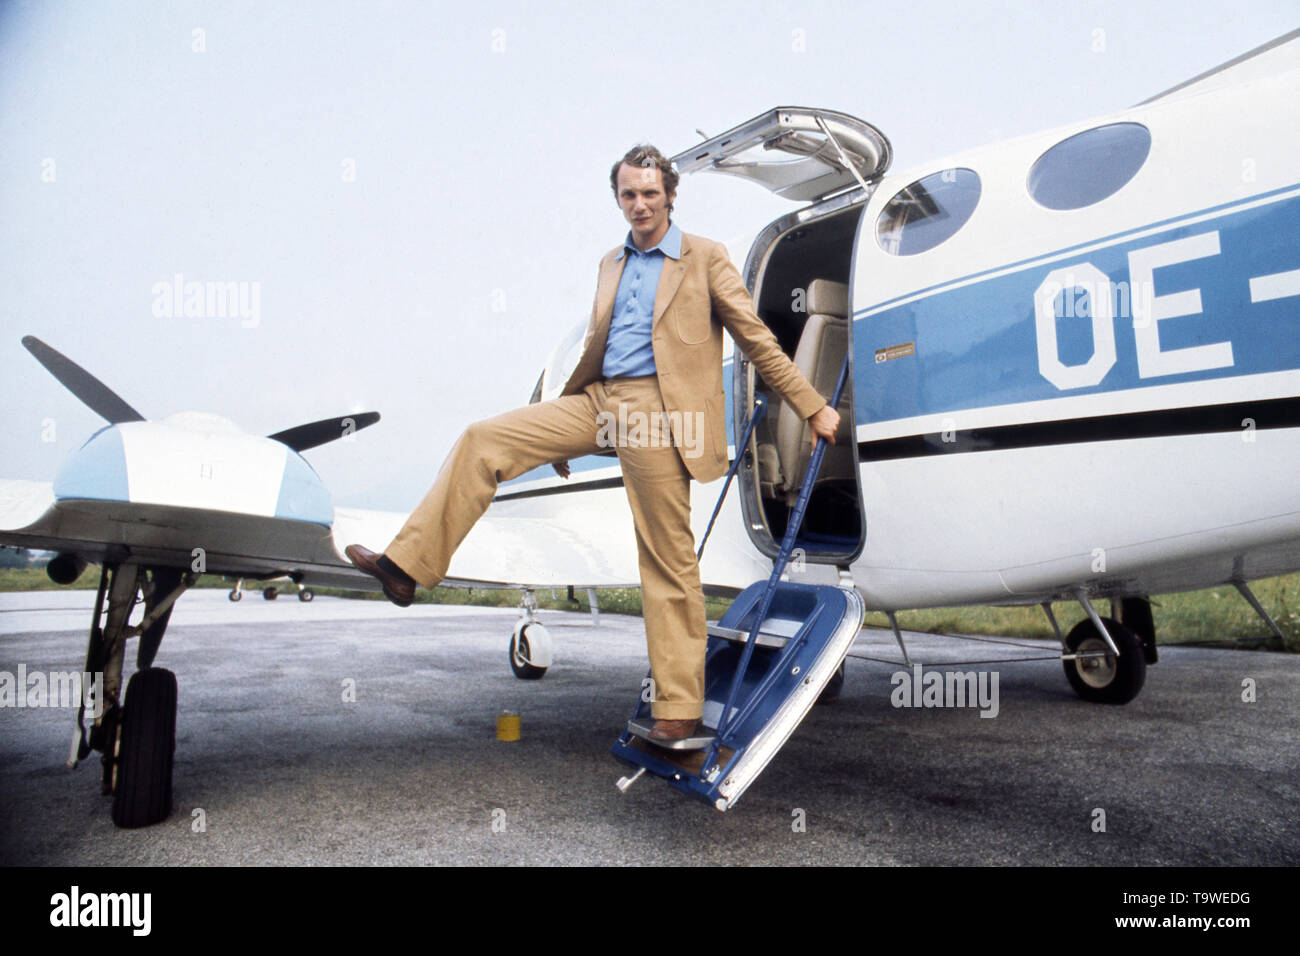 Niki lauda pilot hi-res stock photography and images - Alamy